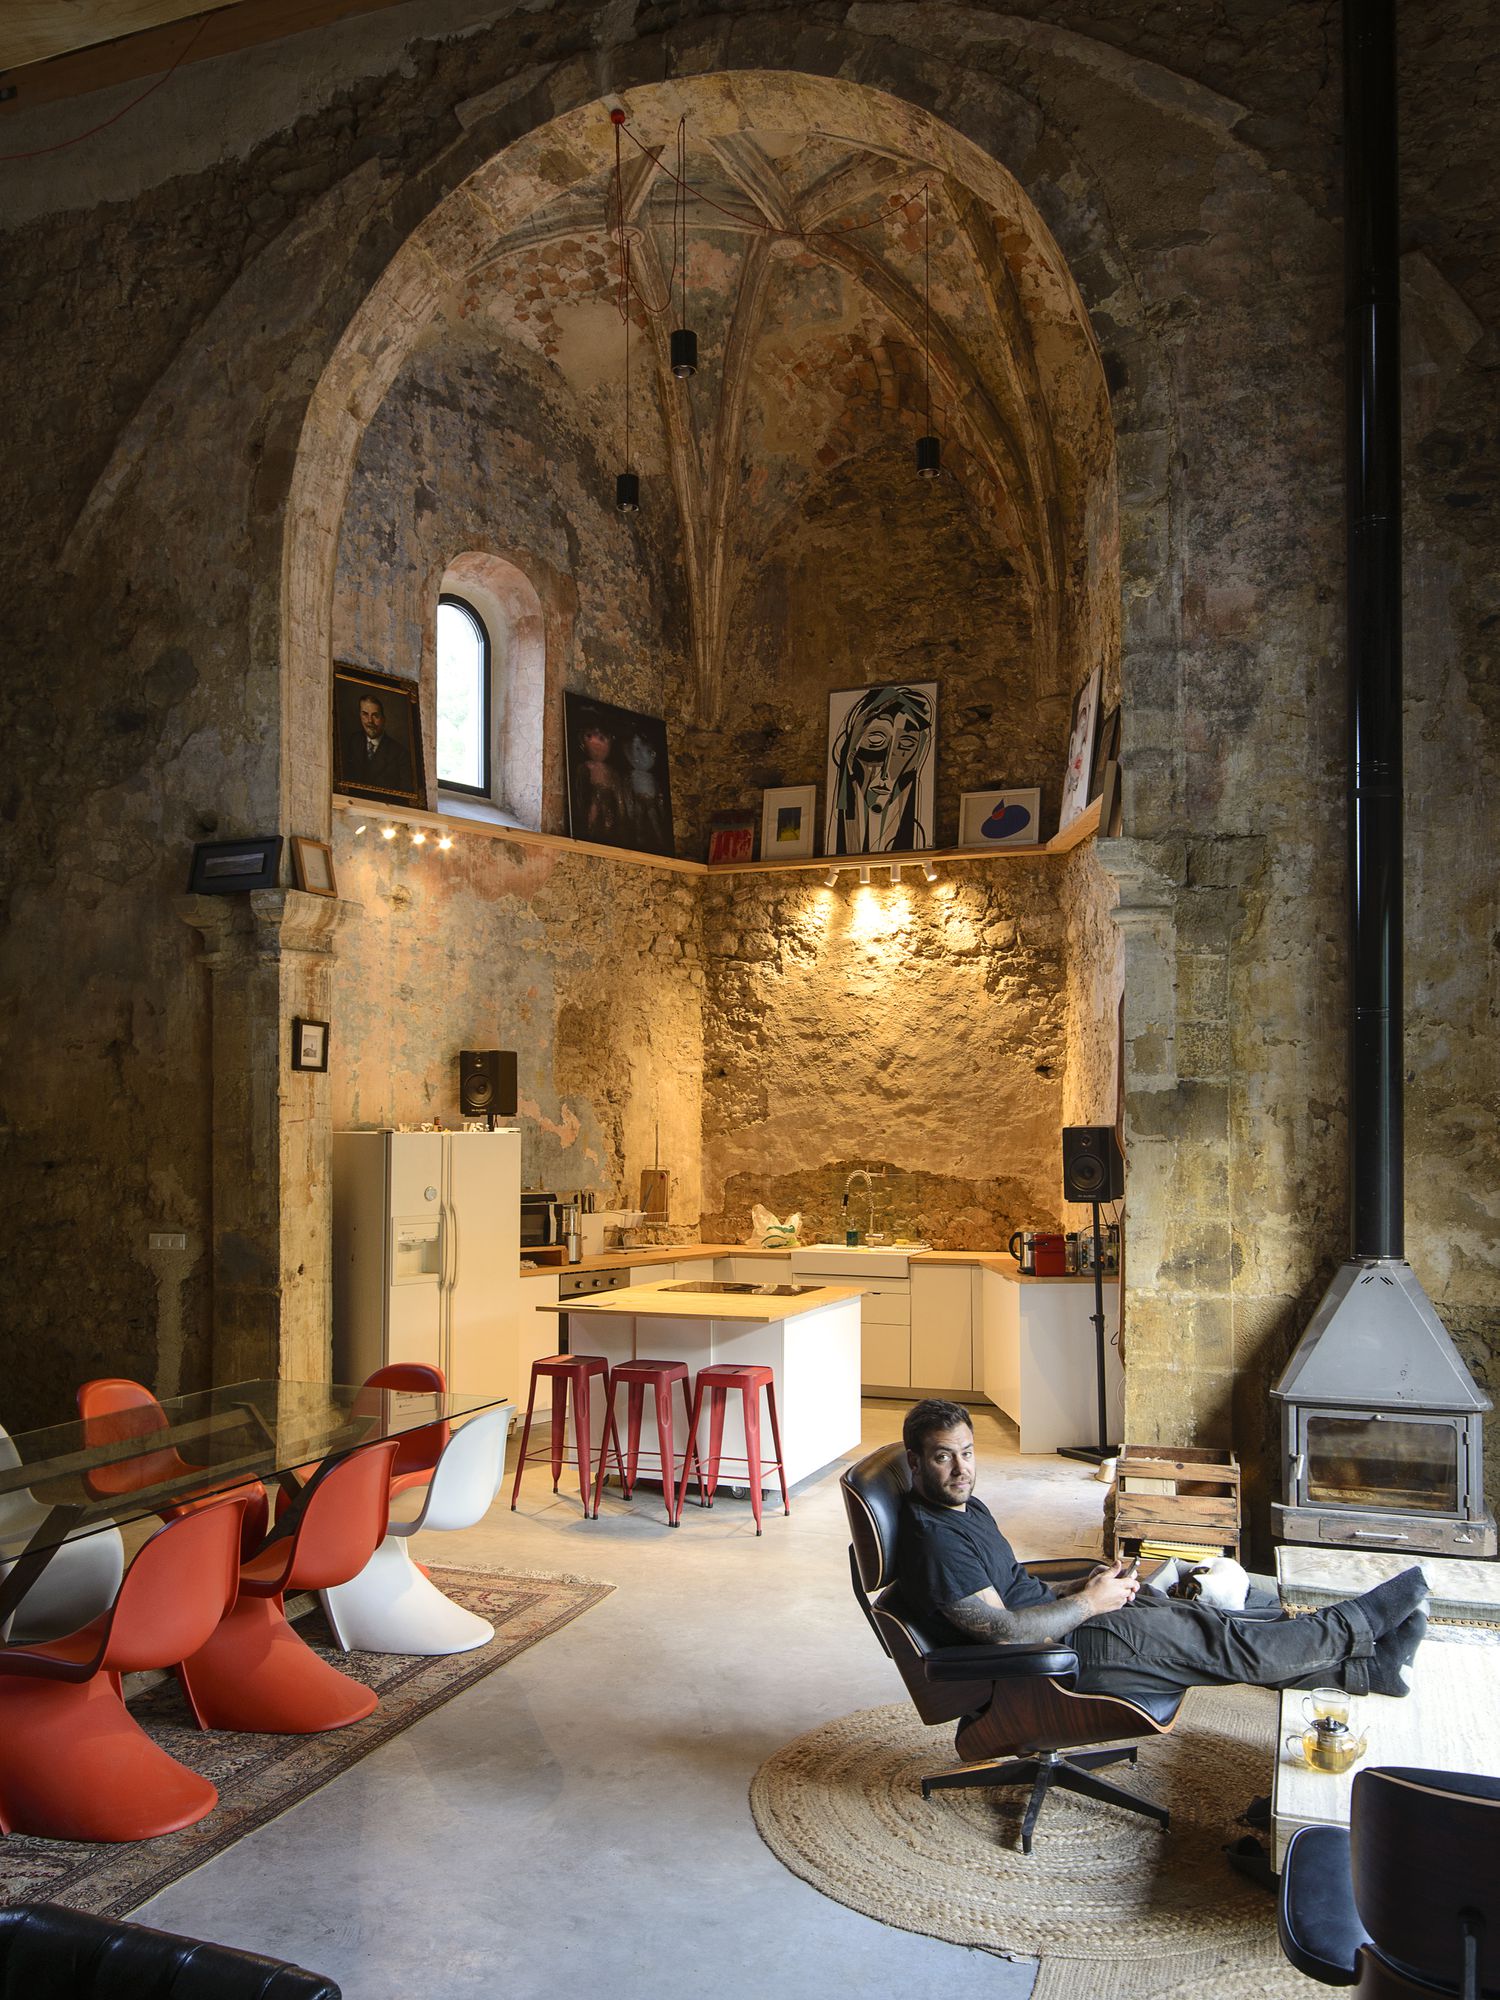 FOTO. Biserică din secolul XVI transformată în locuință. „A fost ca un vis așteptat de orice arhitect”